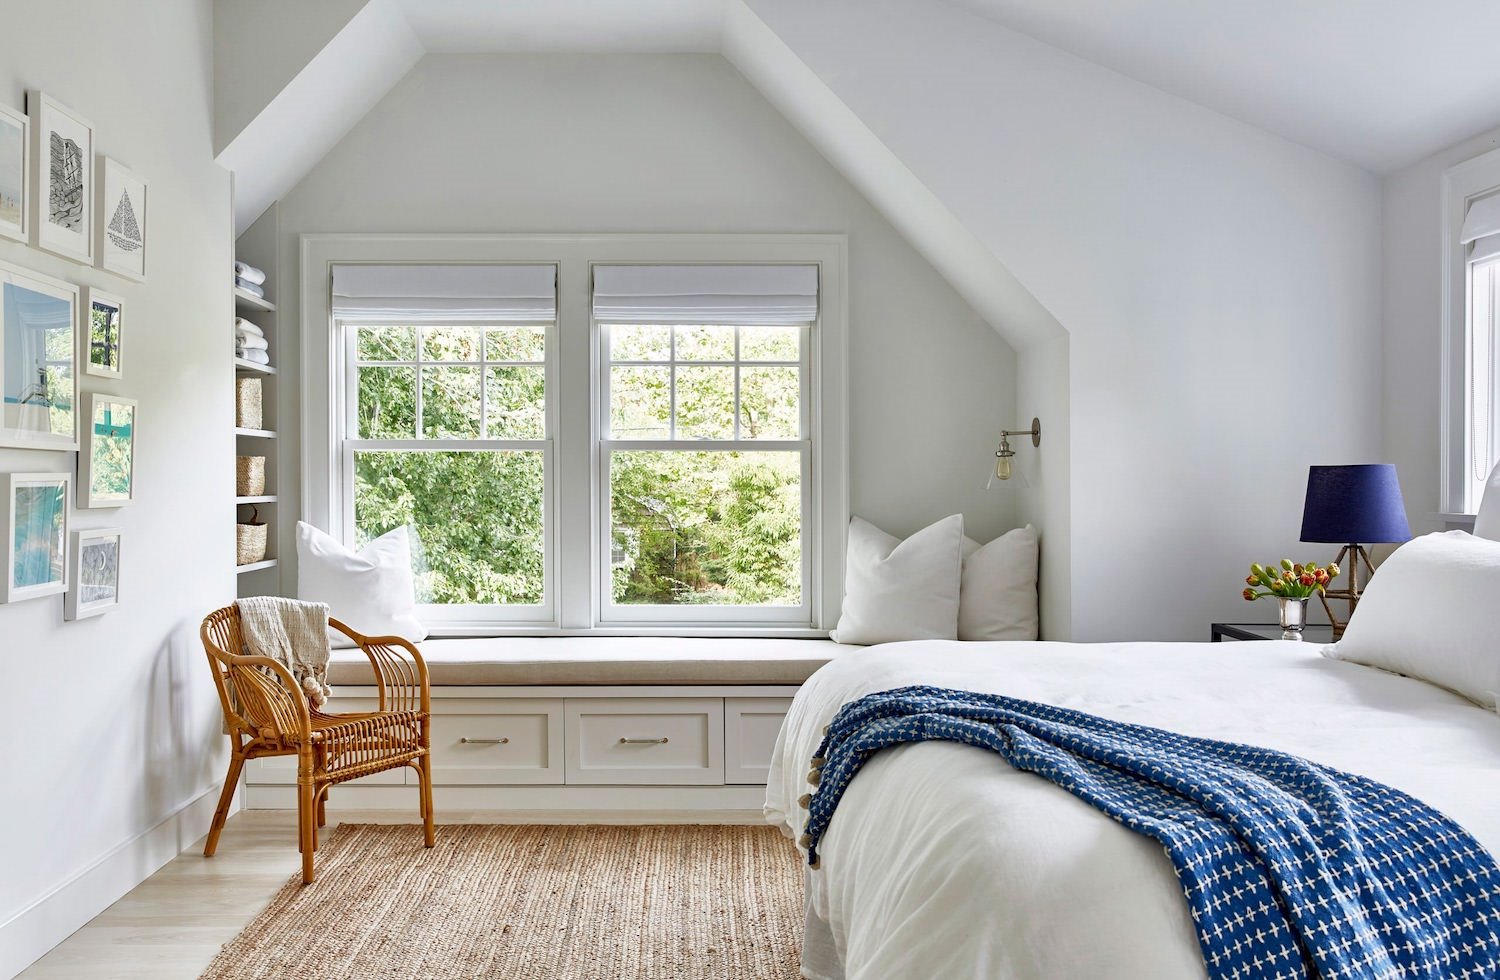 Dormitorio blanco con silla de mimbre y ropa de cama azul y blanca